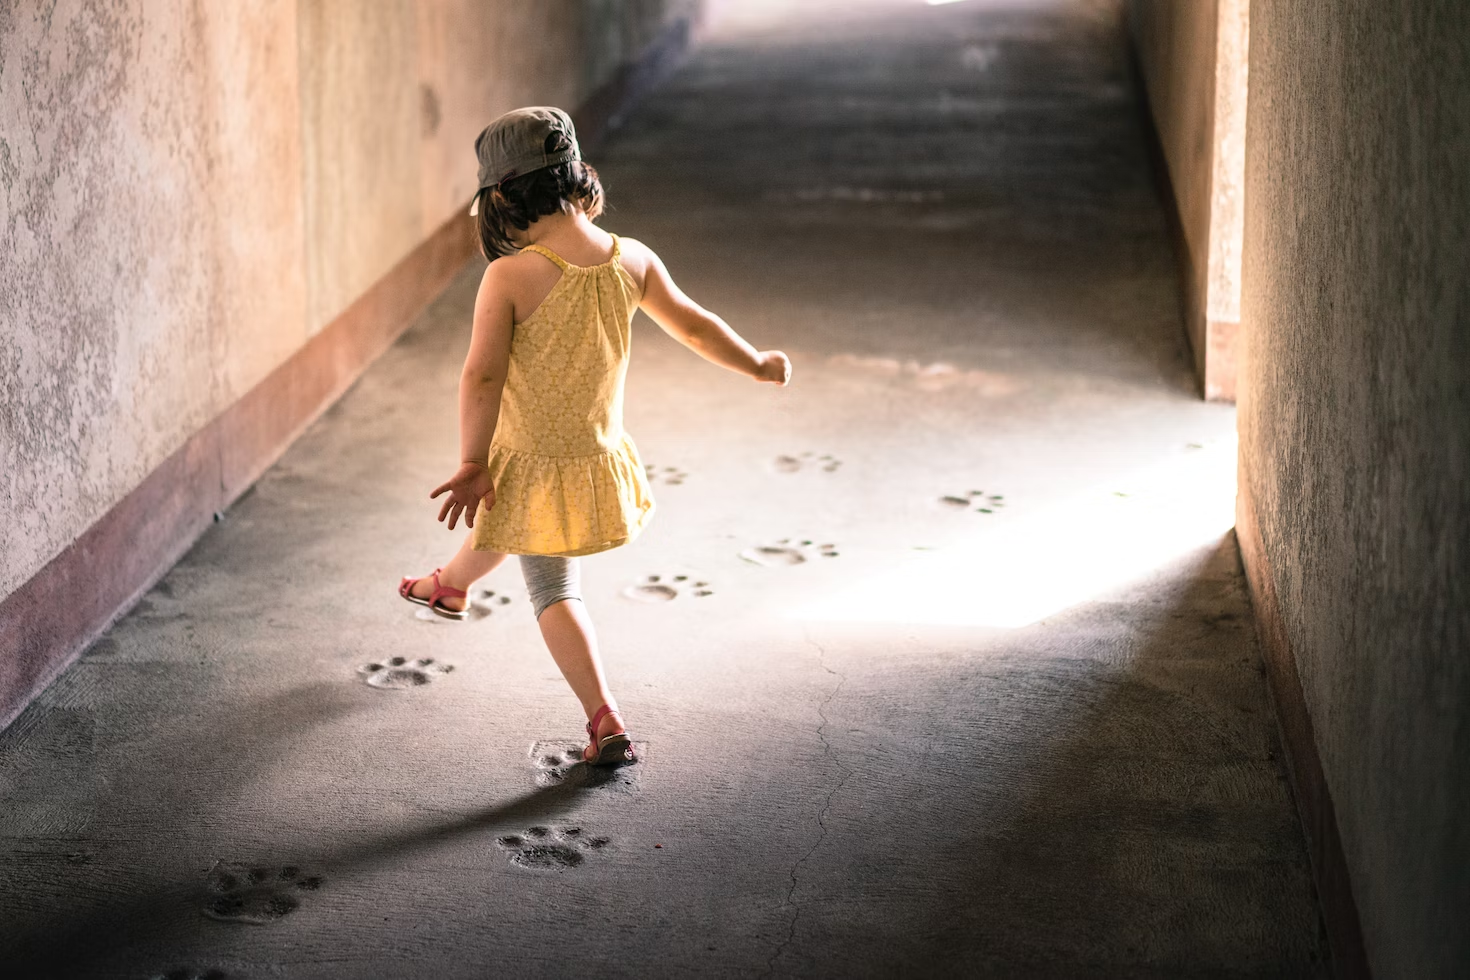 Petite fille portant une robe jaune marchant dans un couloir et suivant des traces de pattes d'animal